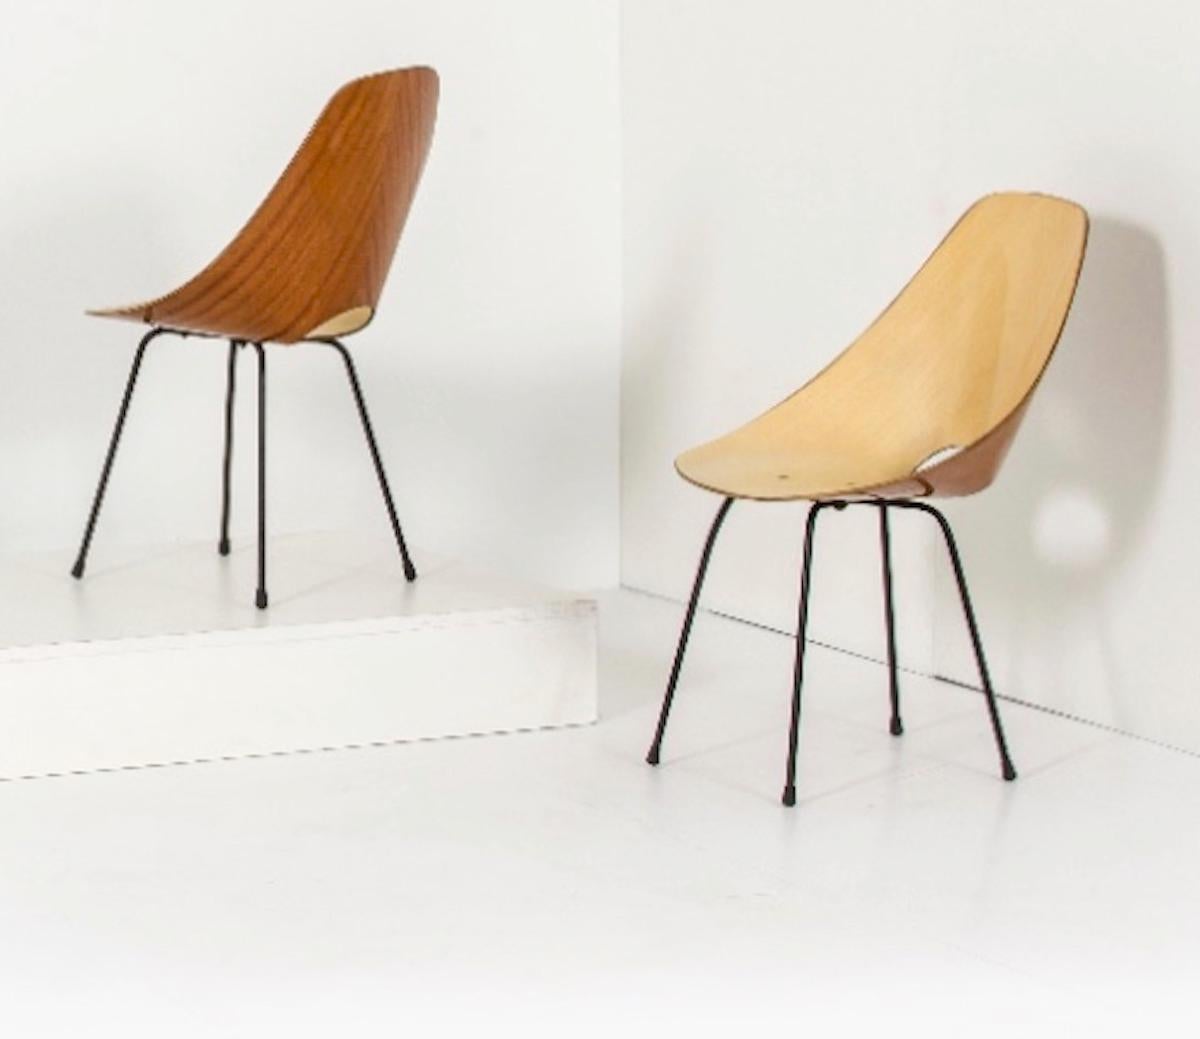 La chaise iconique Medea, conçue en 1955 par Vittorio Nobili pour Fratelli Tagliabue, a remporté le Compasso D'Oro à la Biennale du design industriel de Milan l'année suivante (1956). Contreplaqué incurvé avec dossier ébénisé sur une base en métal